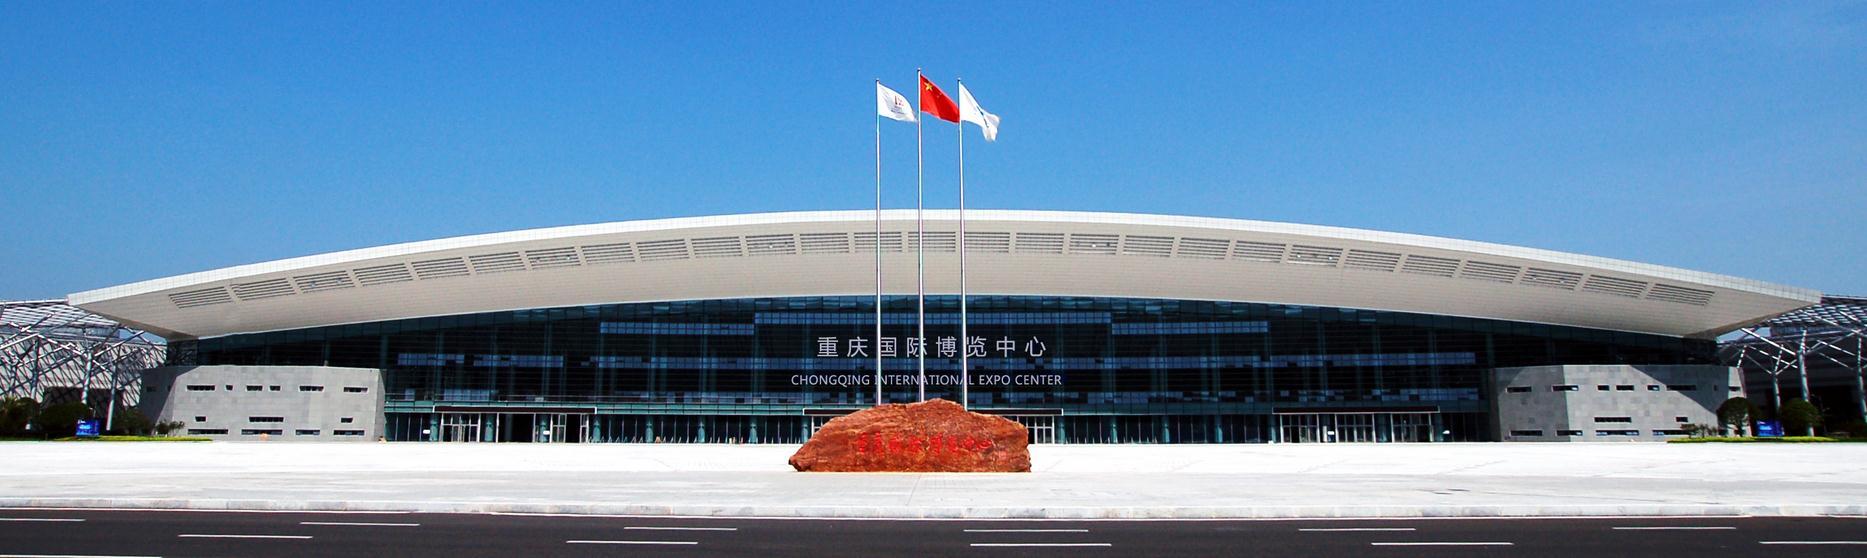 从2018年开始,承接中国国际智能产业博览会的悦来,就已经成为重庆乃至